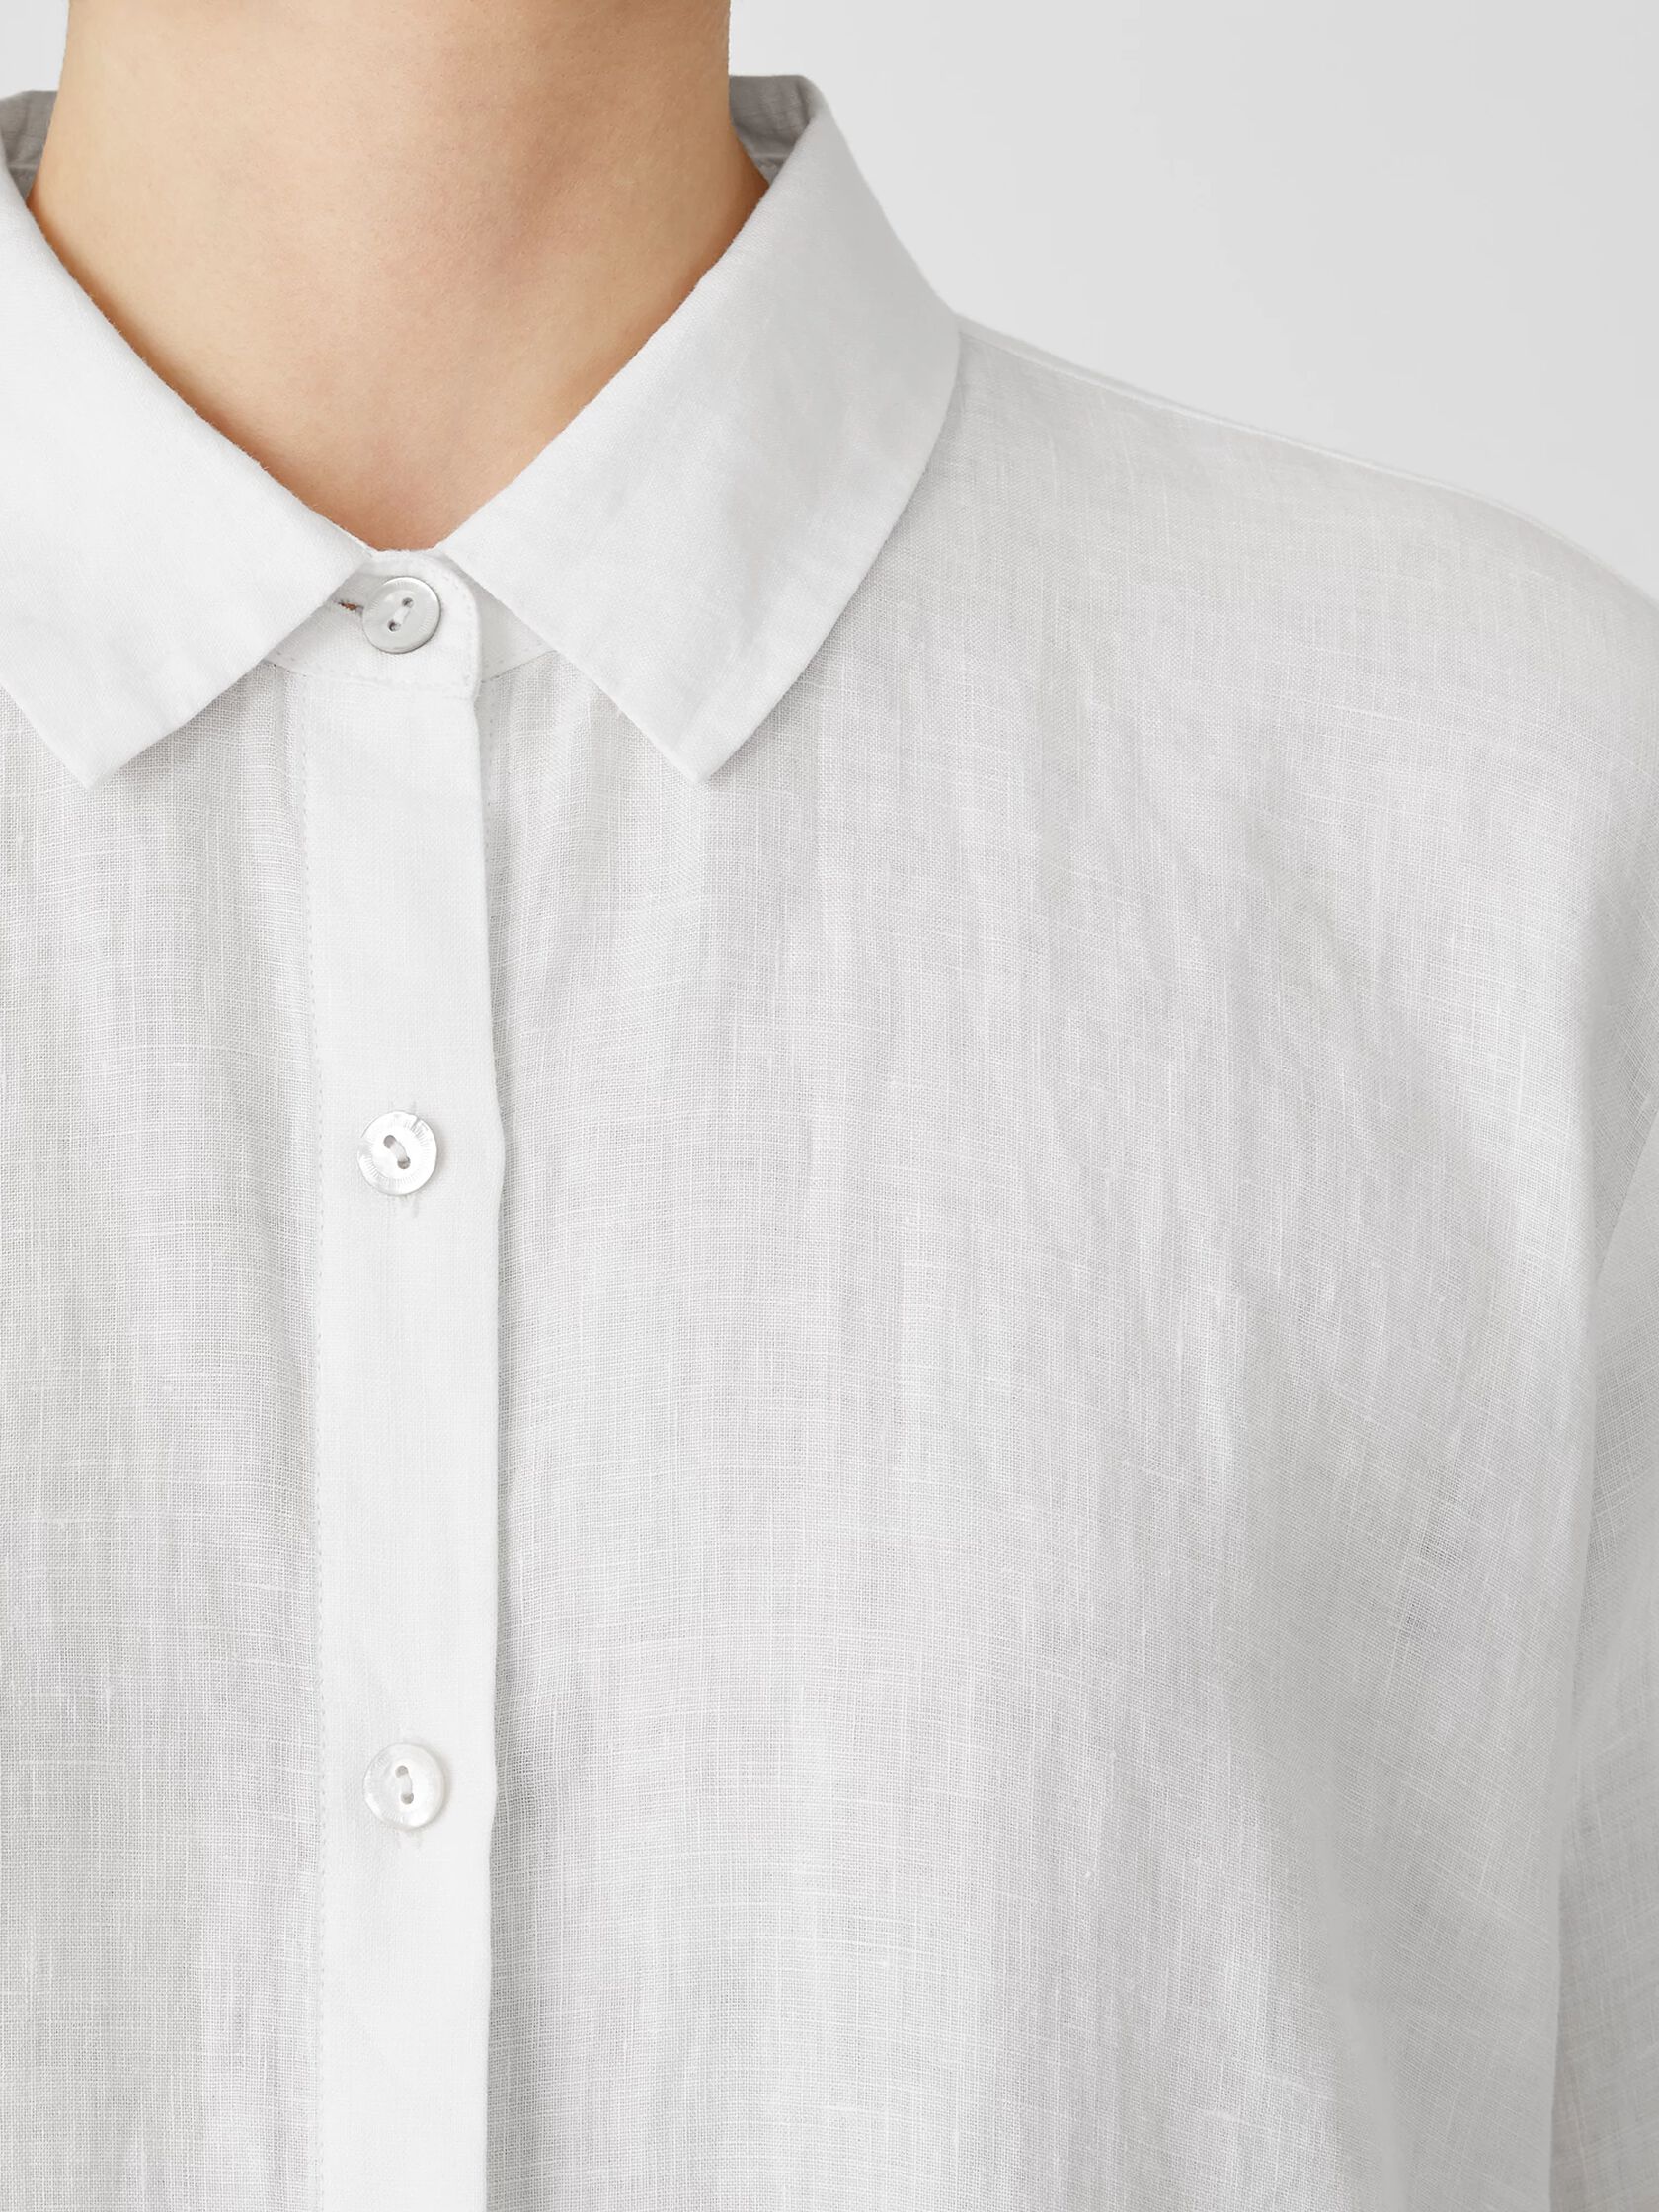 Organic Handkerchief Linen Classic Collar Shirt | EILEEN FISHER